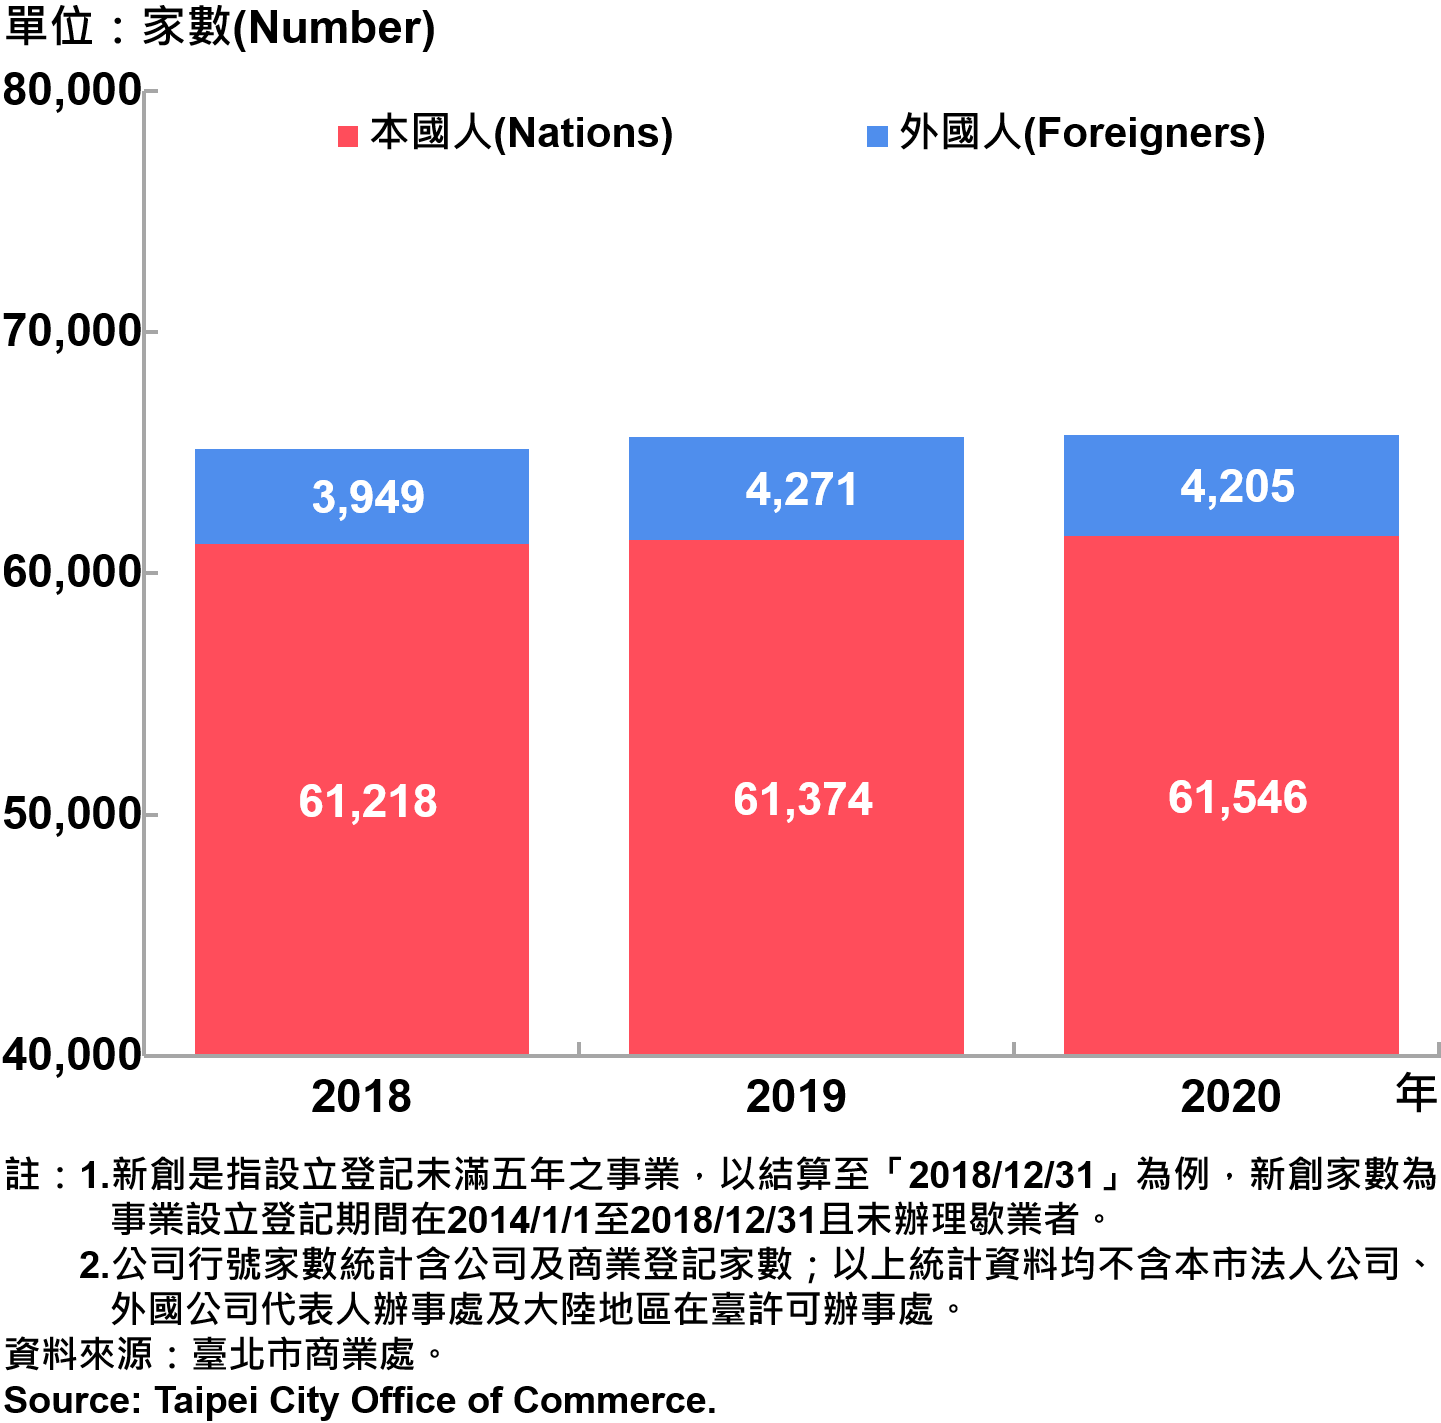 臺北市新創公司負責人-本國人與外國人分布情形-現存家數—2020 Responsible Person of Newly Registered Companies In Taipei City by Nationality - Number of Current—2020